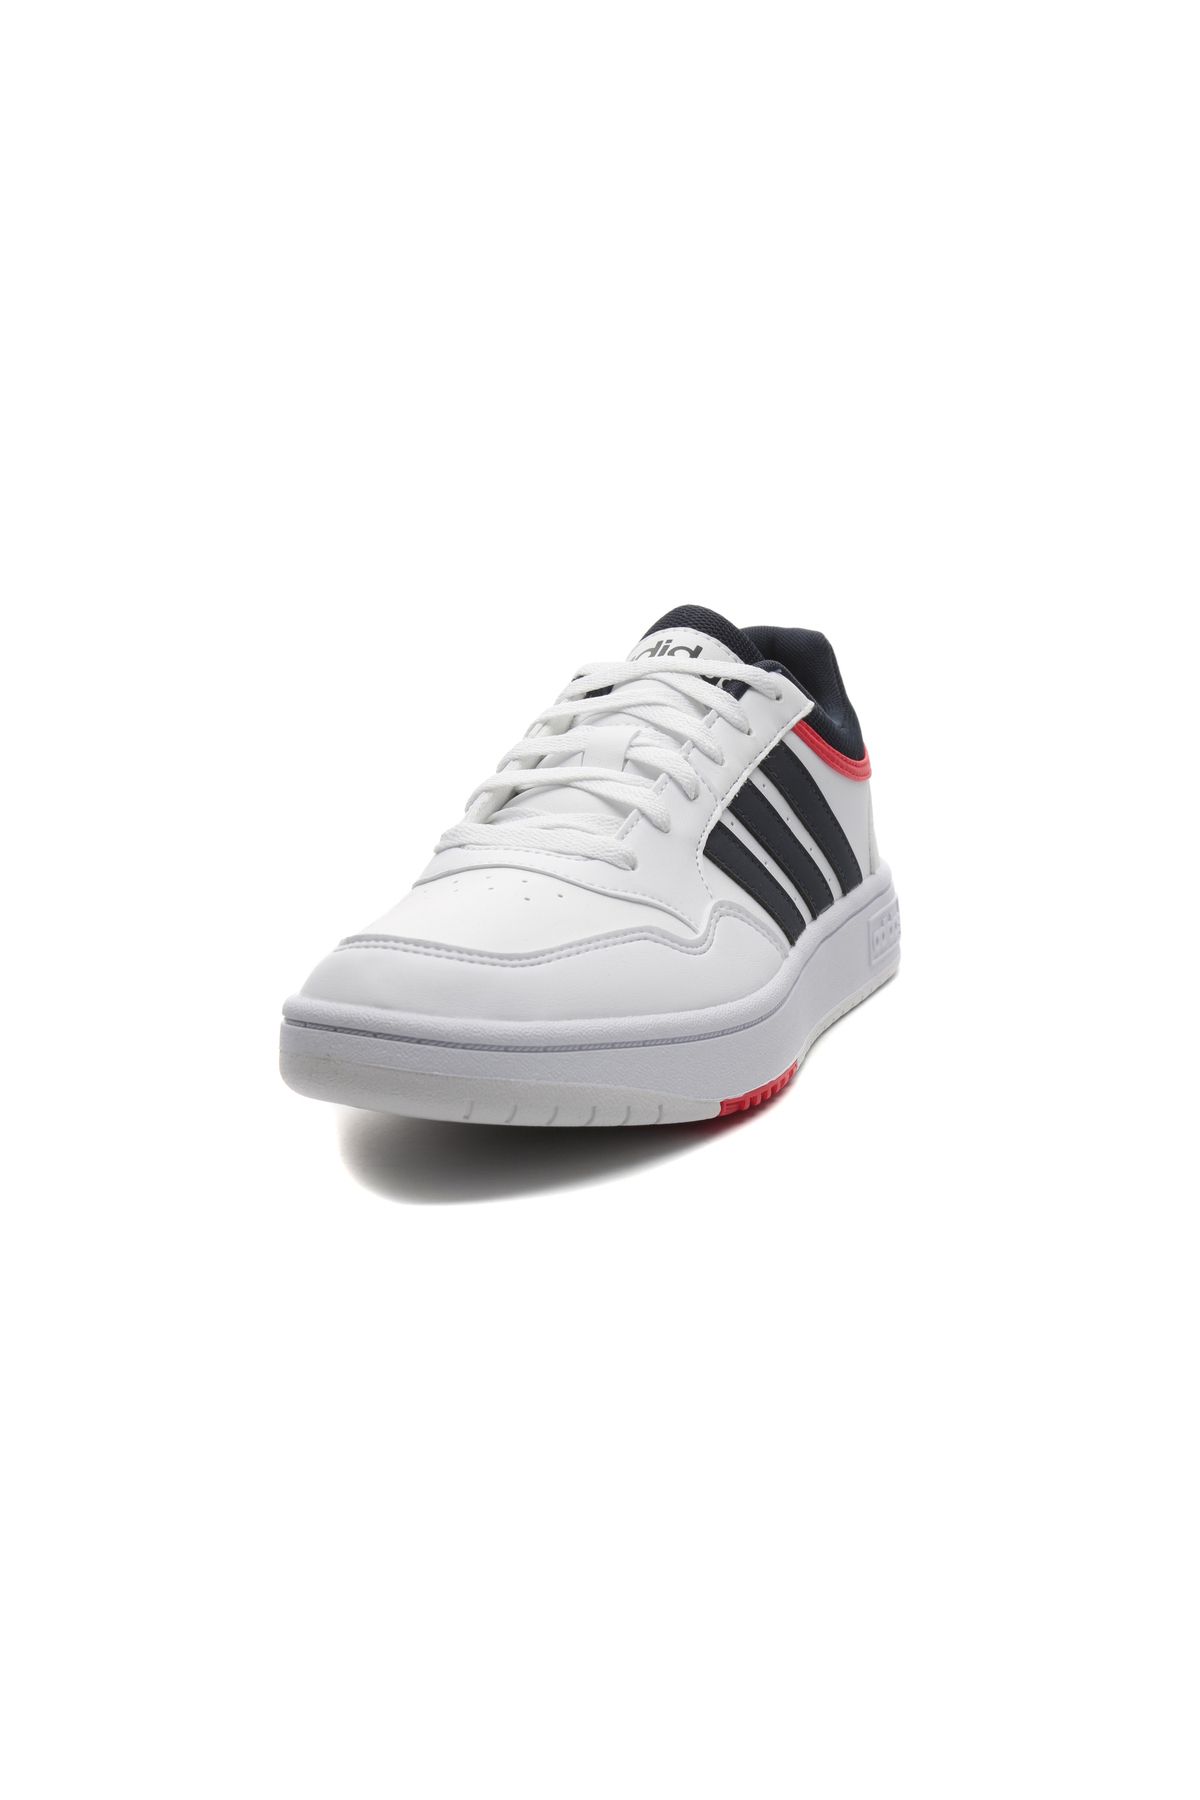 adidas Gy5427-e Hoops 3.0 Erkek Spor Ayakkabı Beyaz